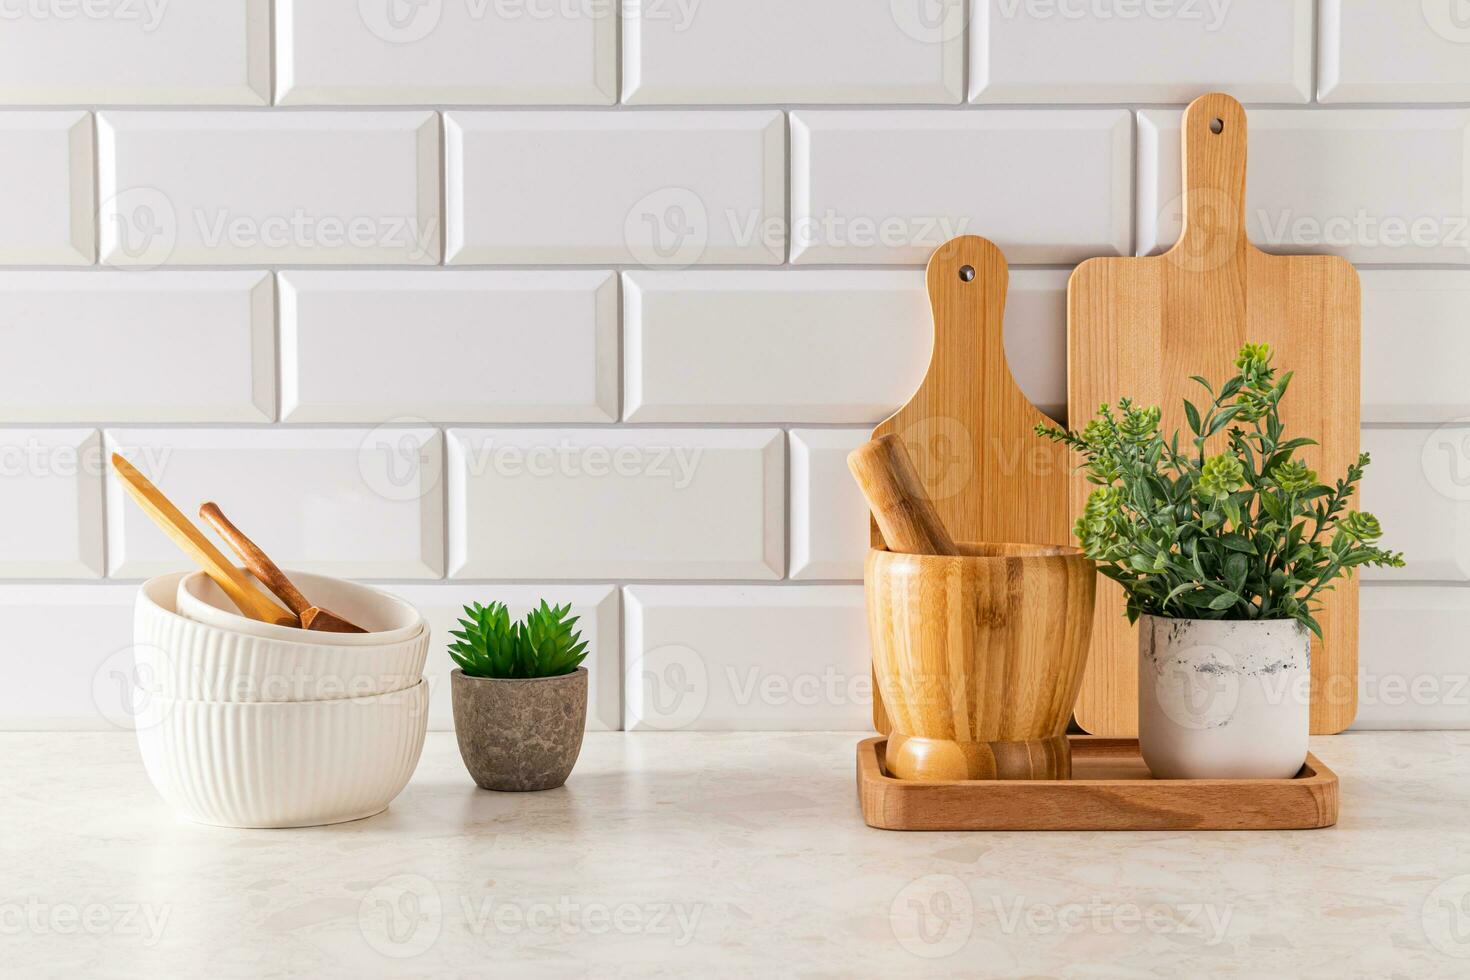 reeks van keramisch kommen en snijdend borden Aan steen licht aanrecht in modern keuken met ingemaakt, cactus . voorkant visie. minimalisme. foto